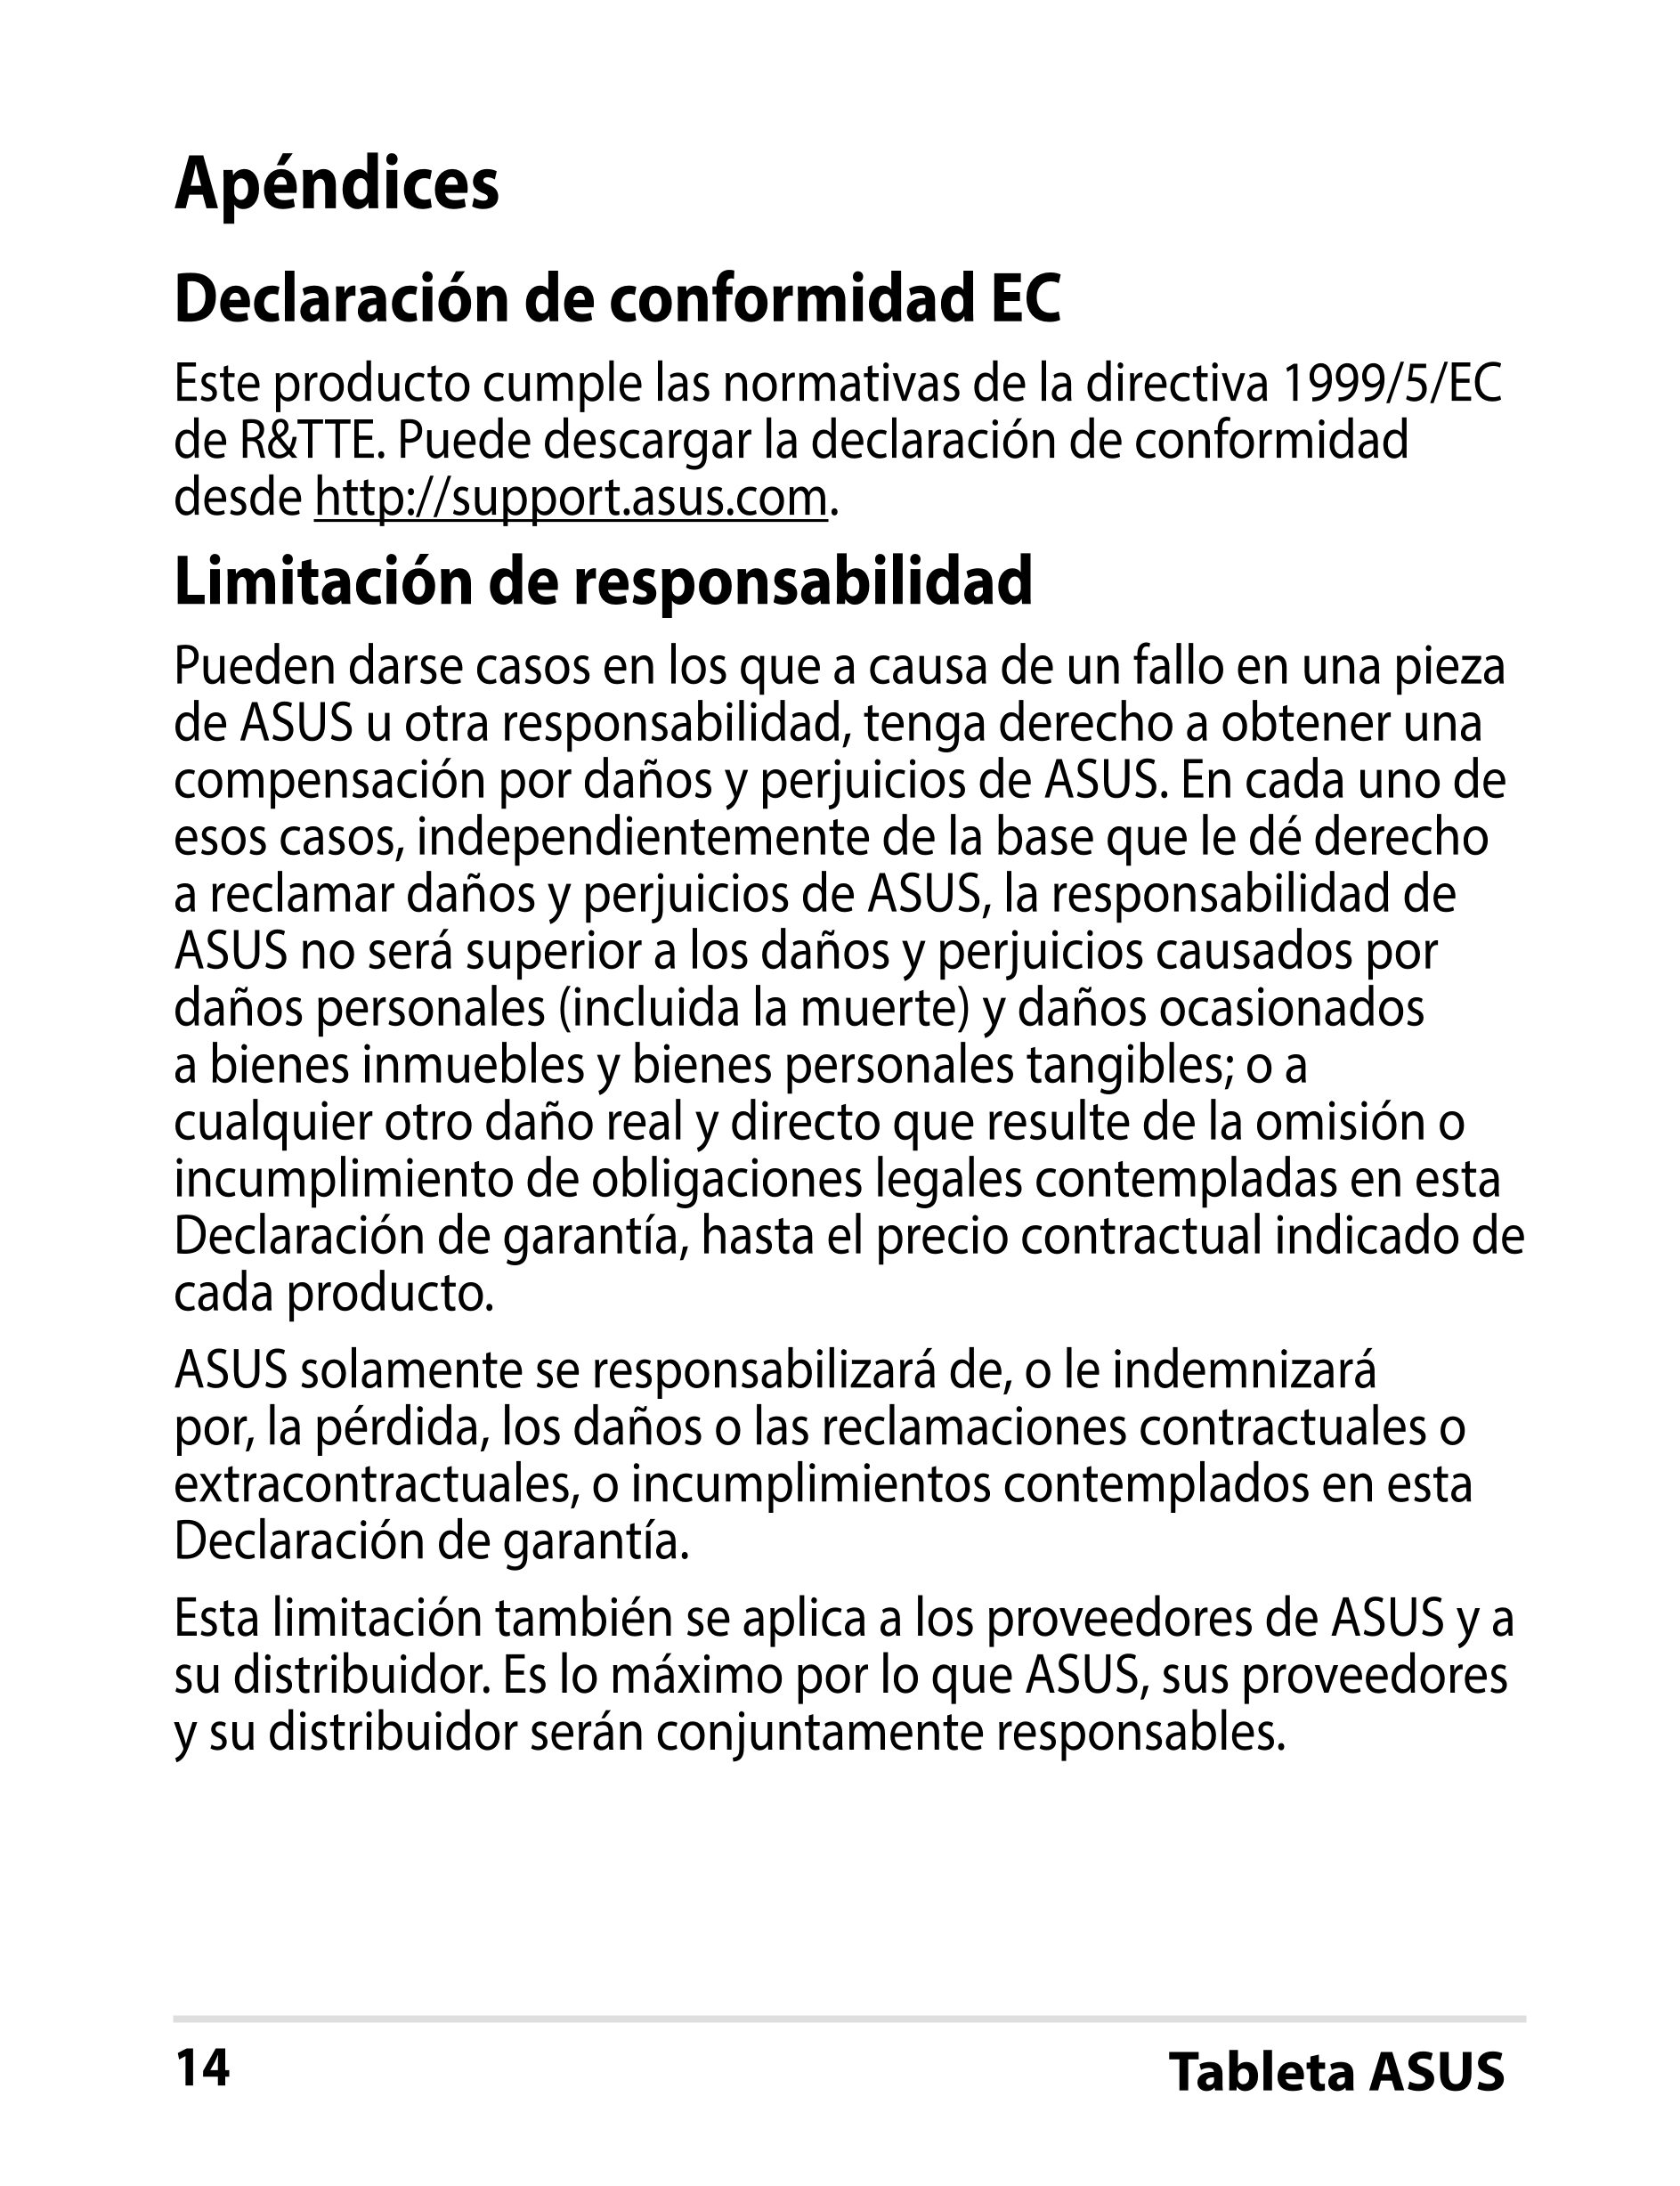 Apéndices
Declaración de conformidad EC
Este producto cumple las normativas de la directiva 1999/5/EC 
de R&TTE. Puede descargar